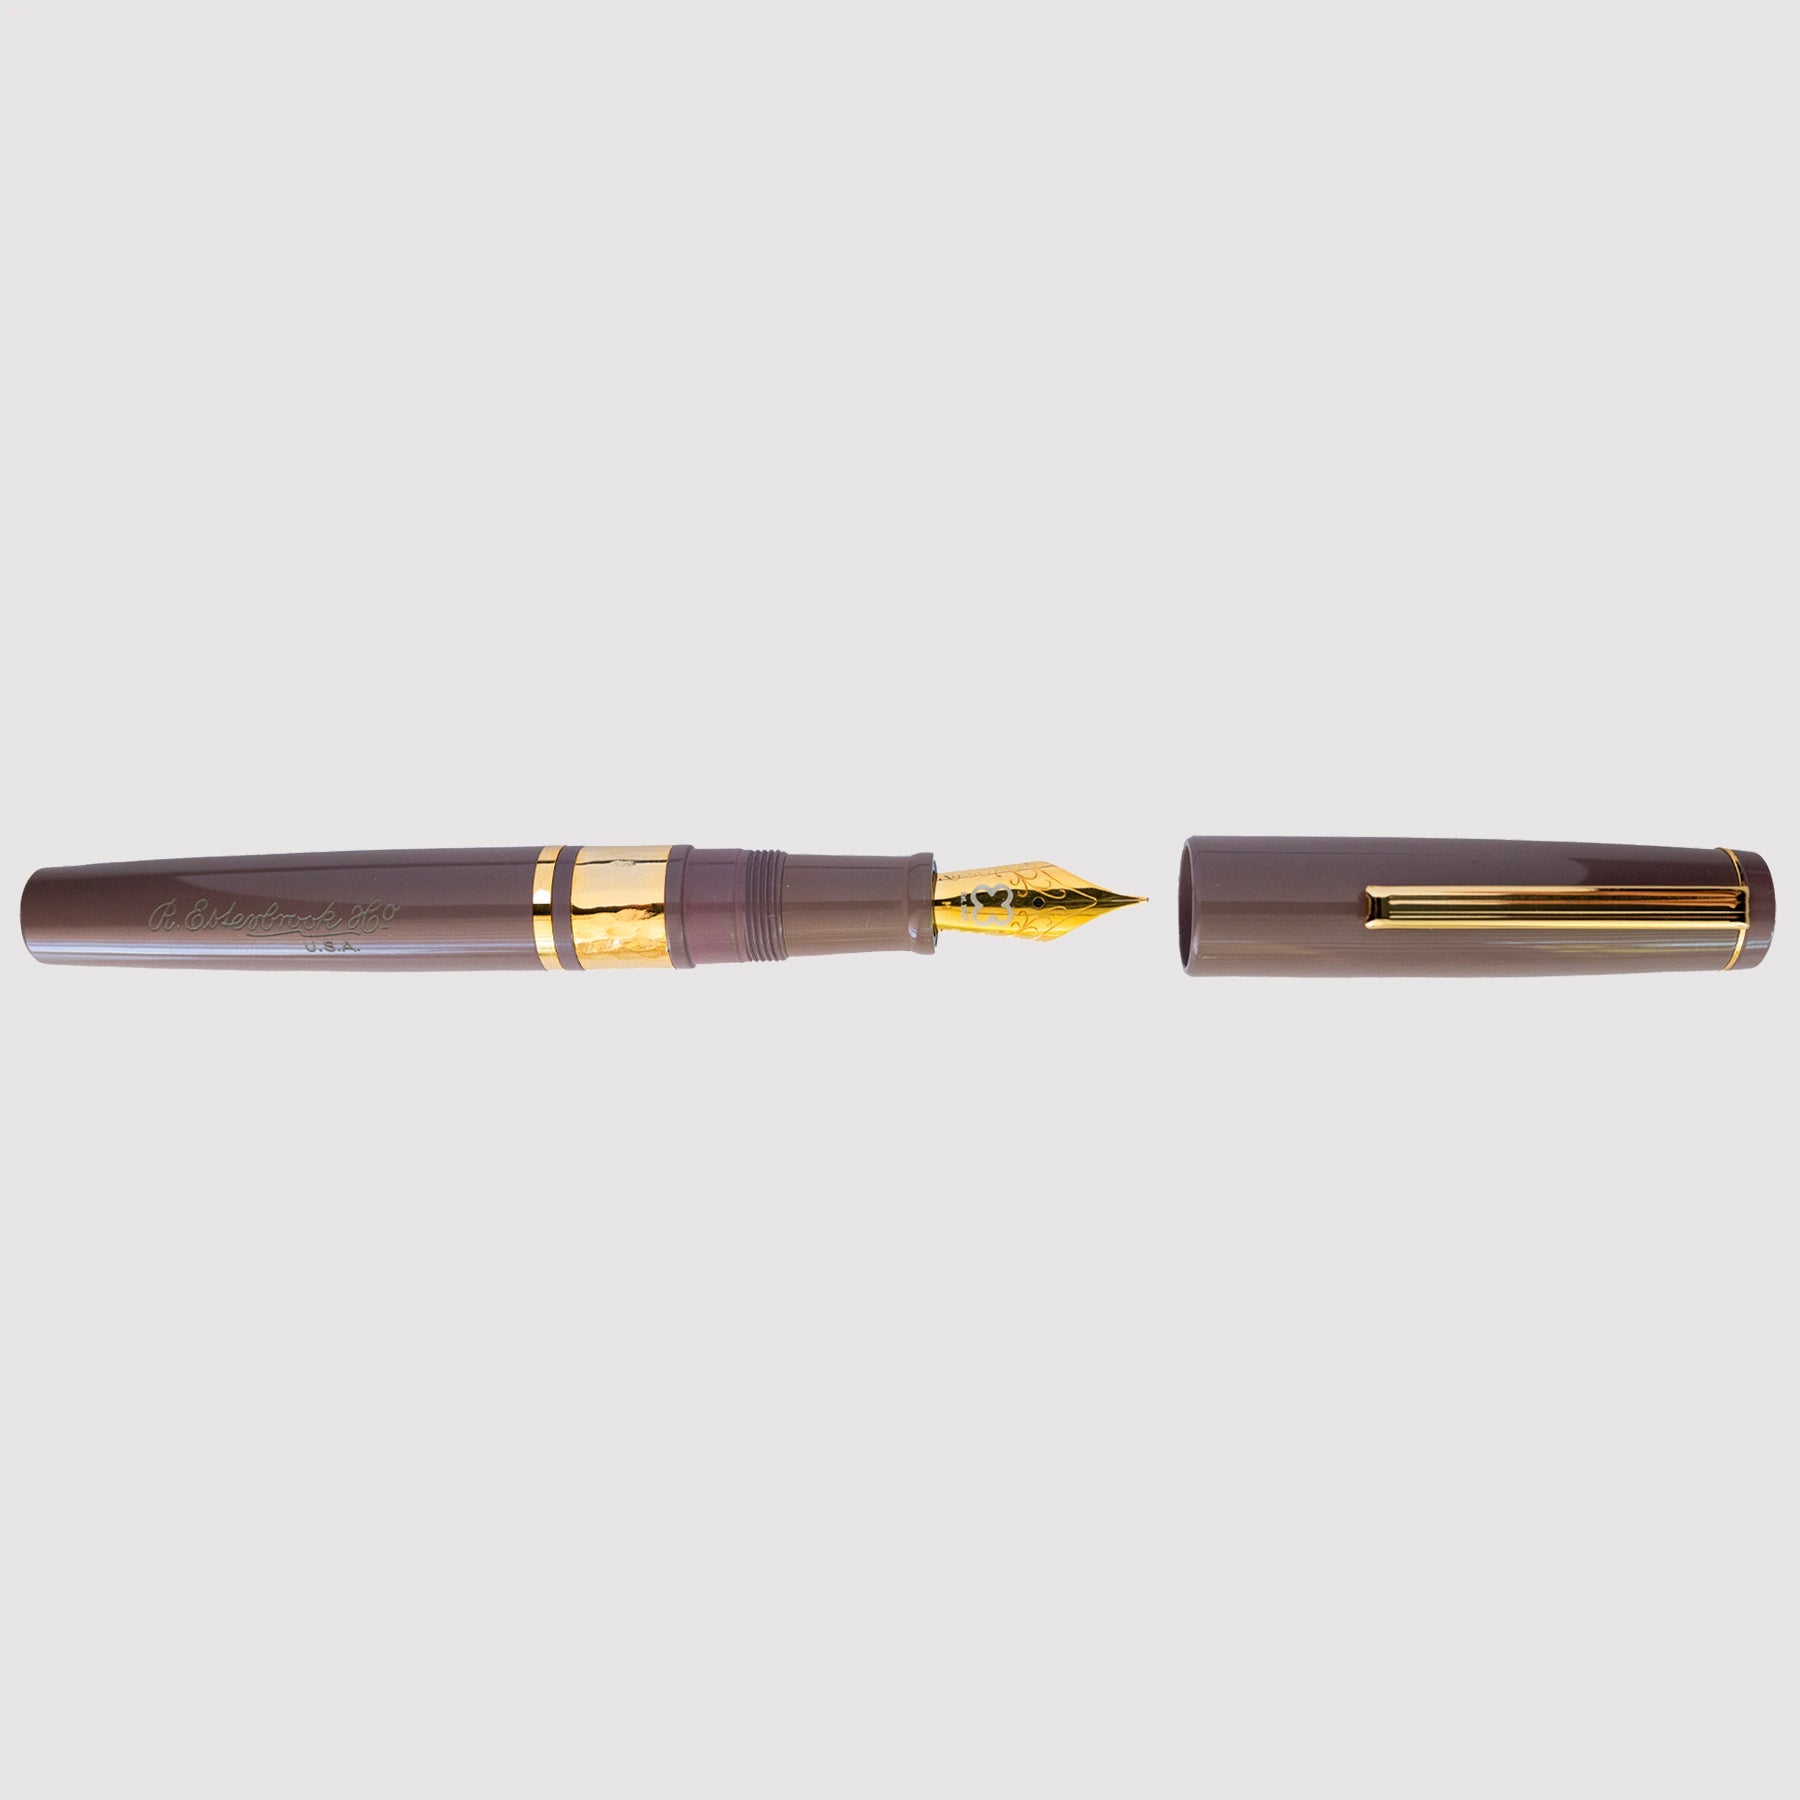 Esterbrook - Fountain Pen Model J (Purple Collection)